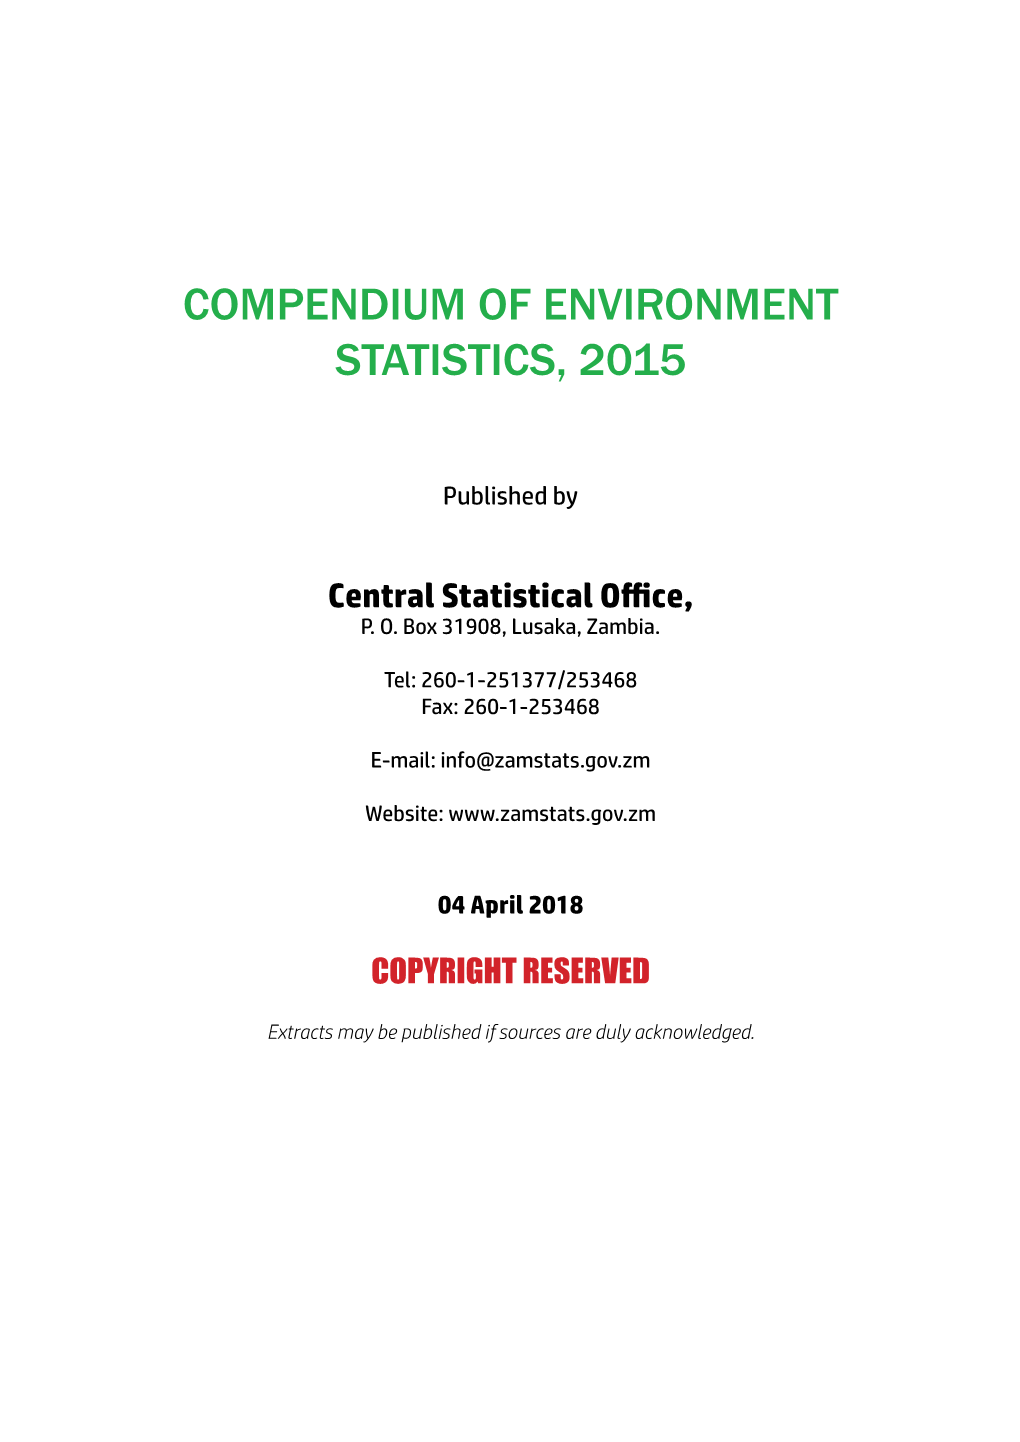 Compendium of Environment Statistics, 2015